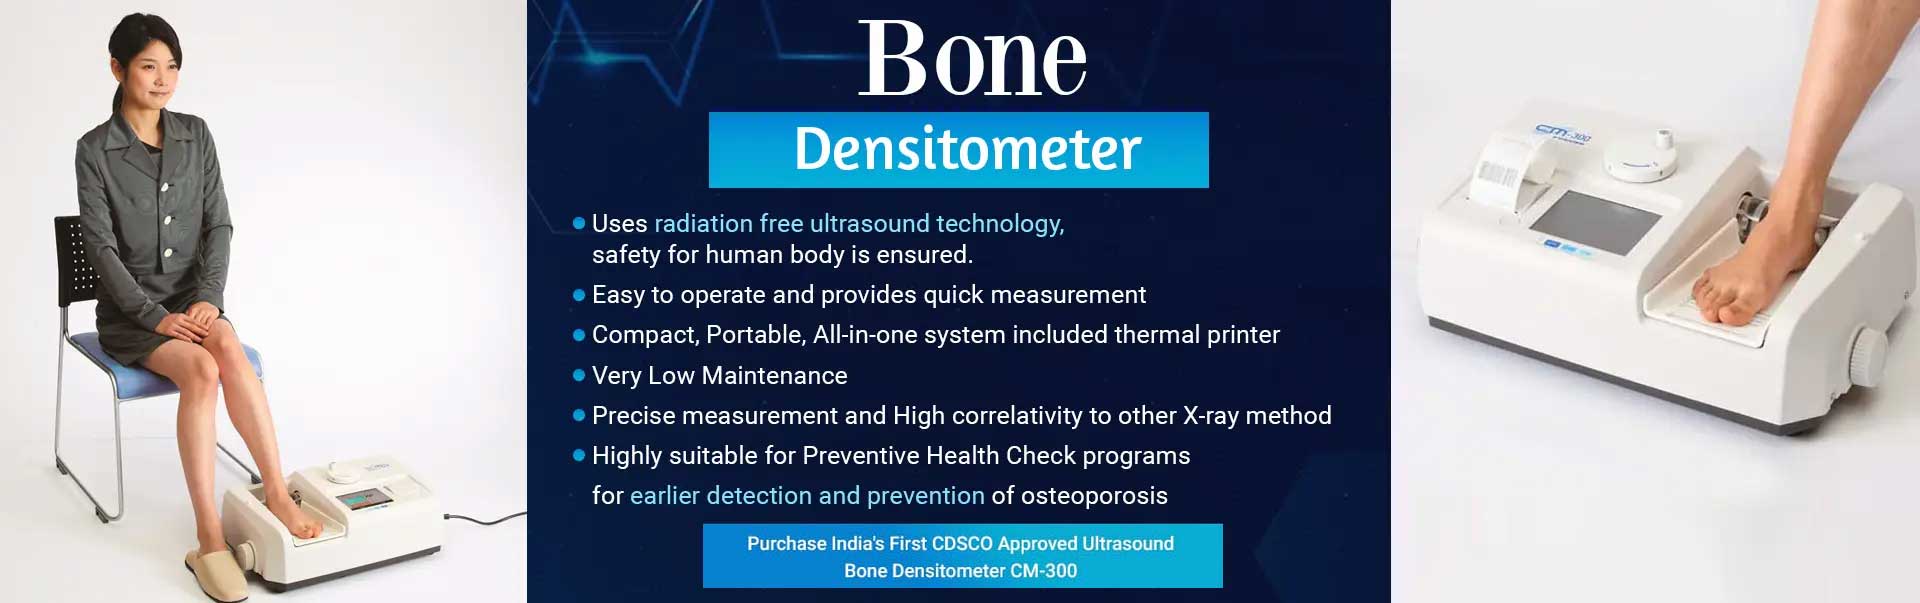 Bone Densitometer Manufacturers in Nashik